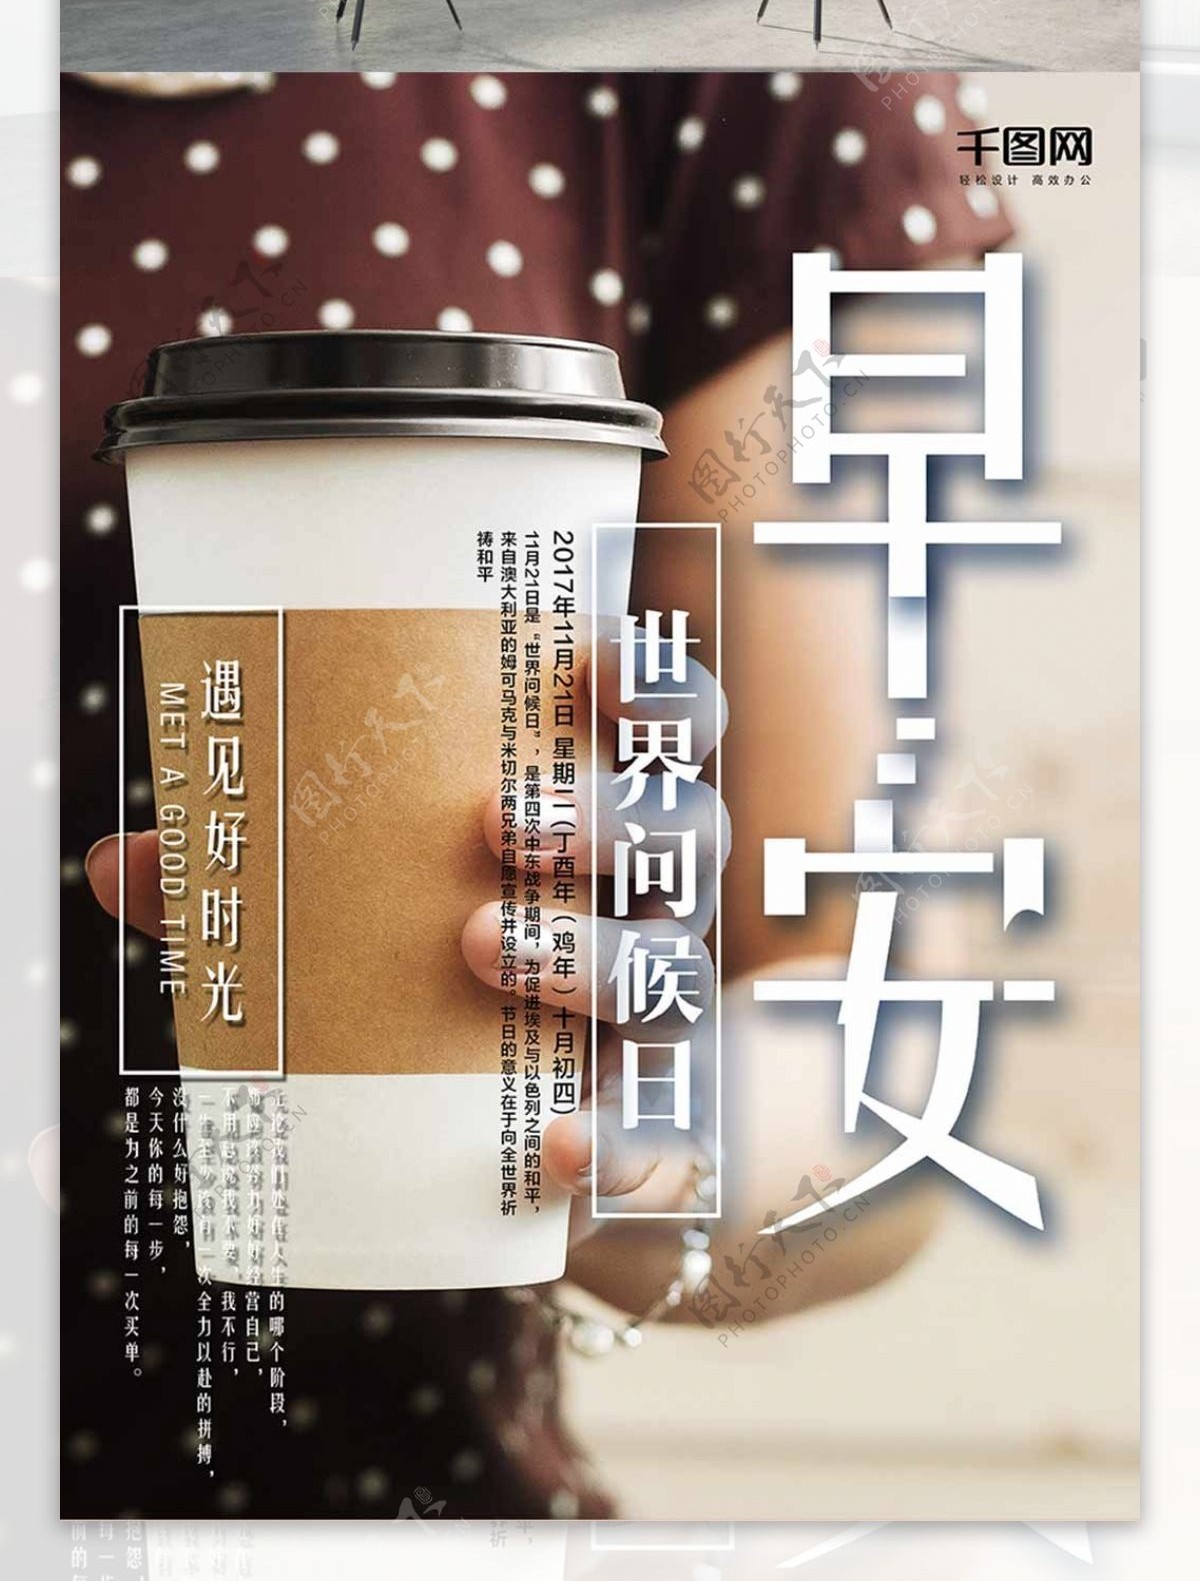 咖啡世界问候日早安海报设计